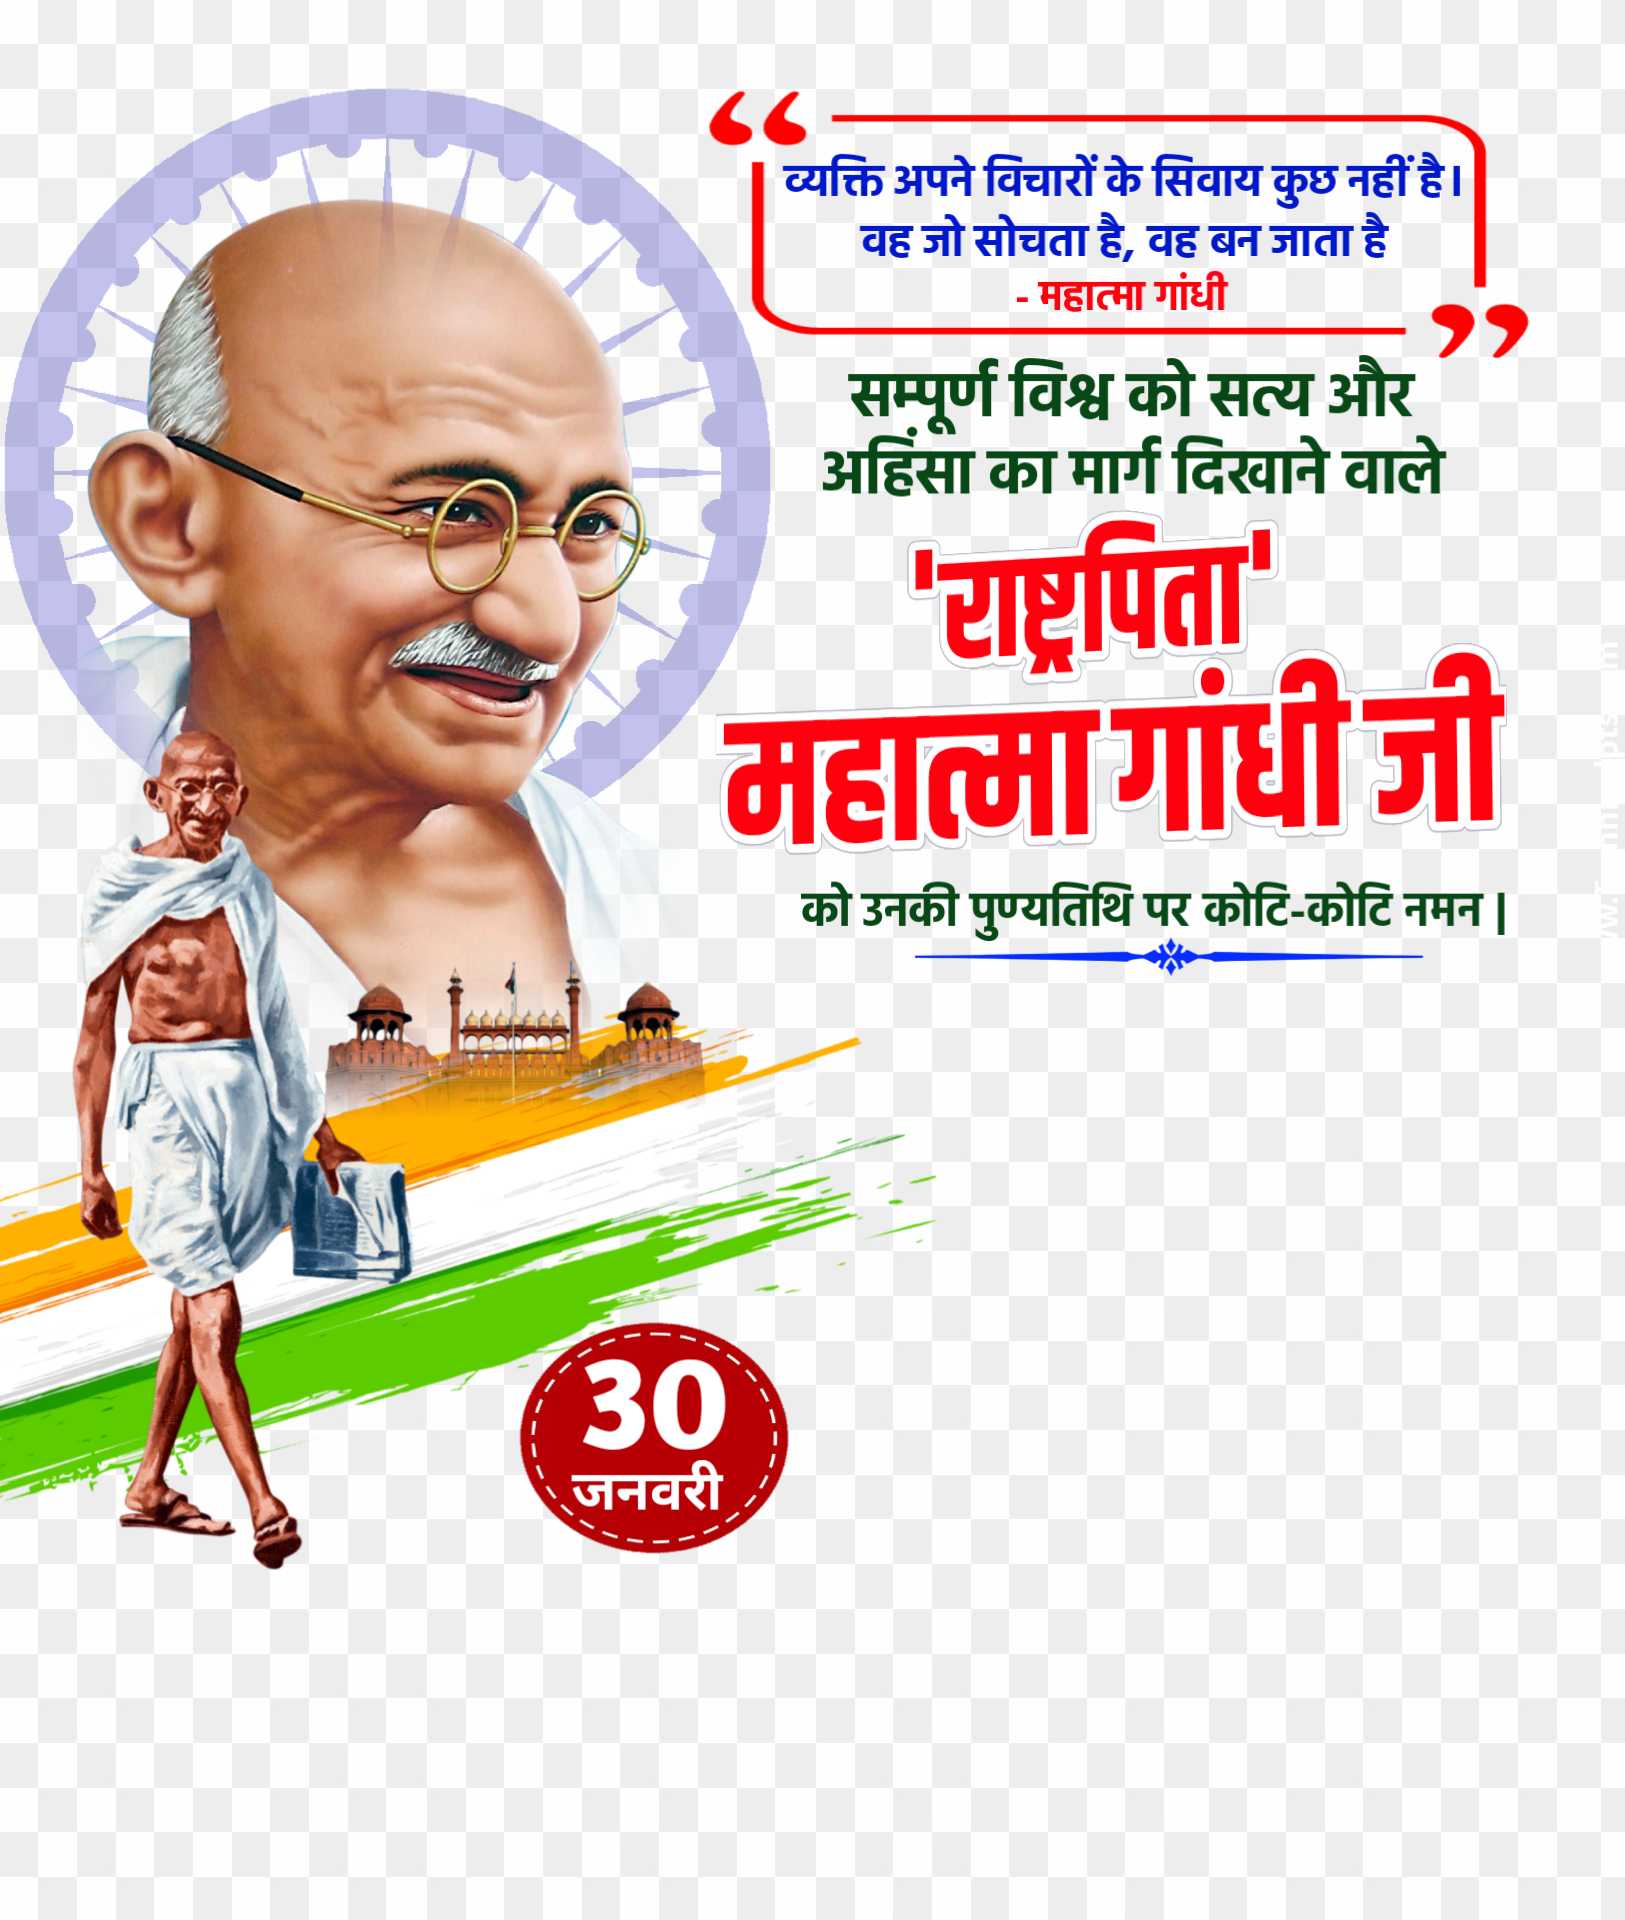 Mahatma Gandhi punyatithi banner poster designing PNG images